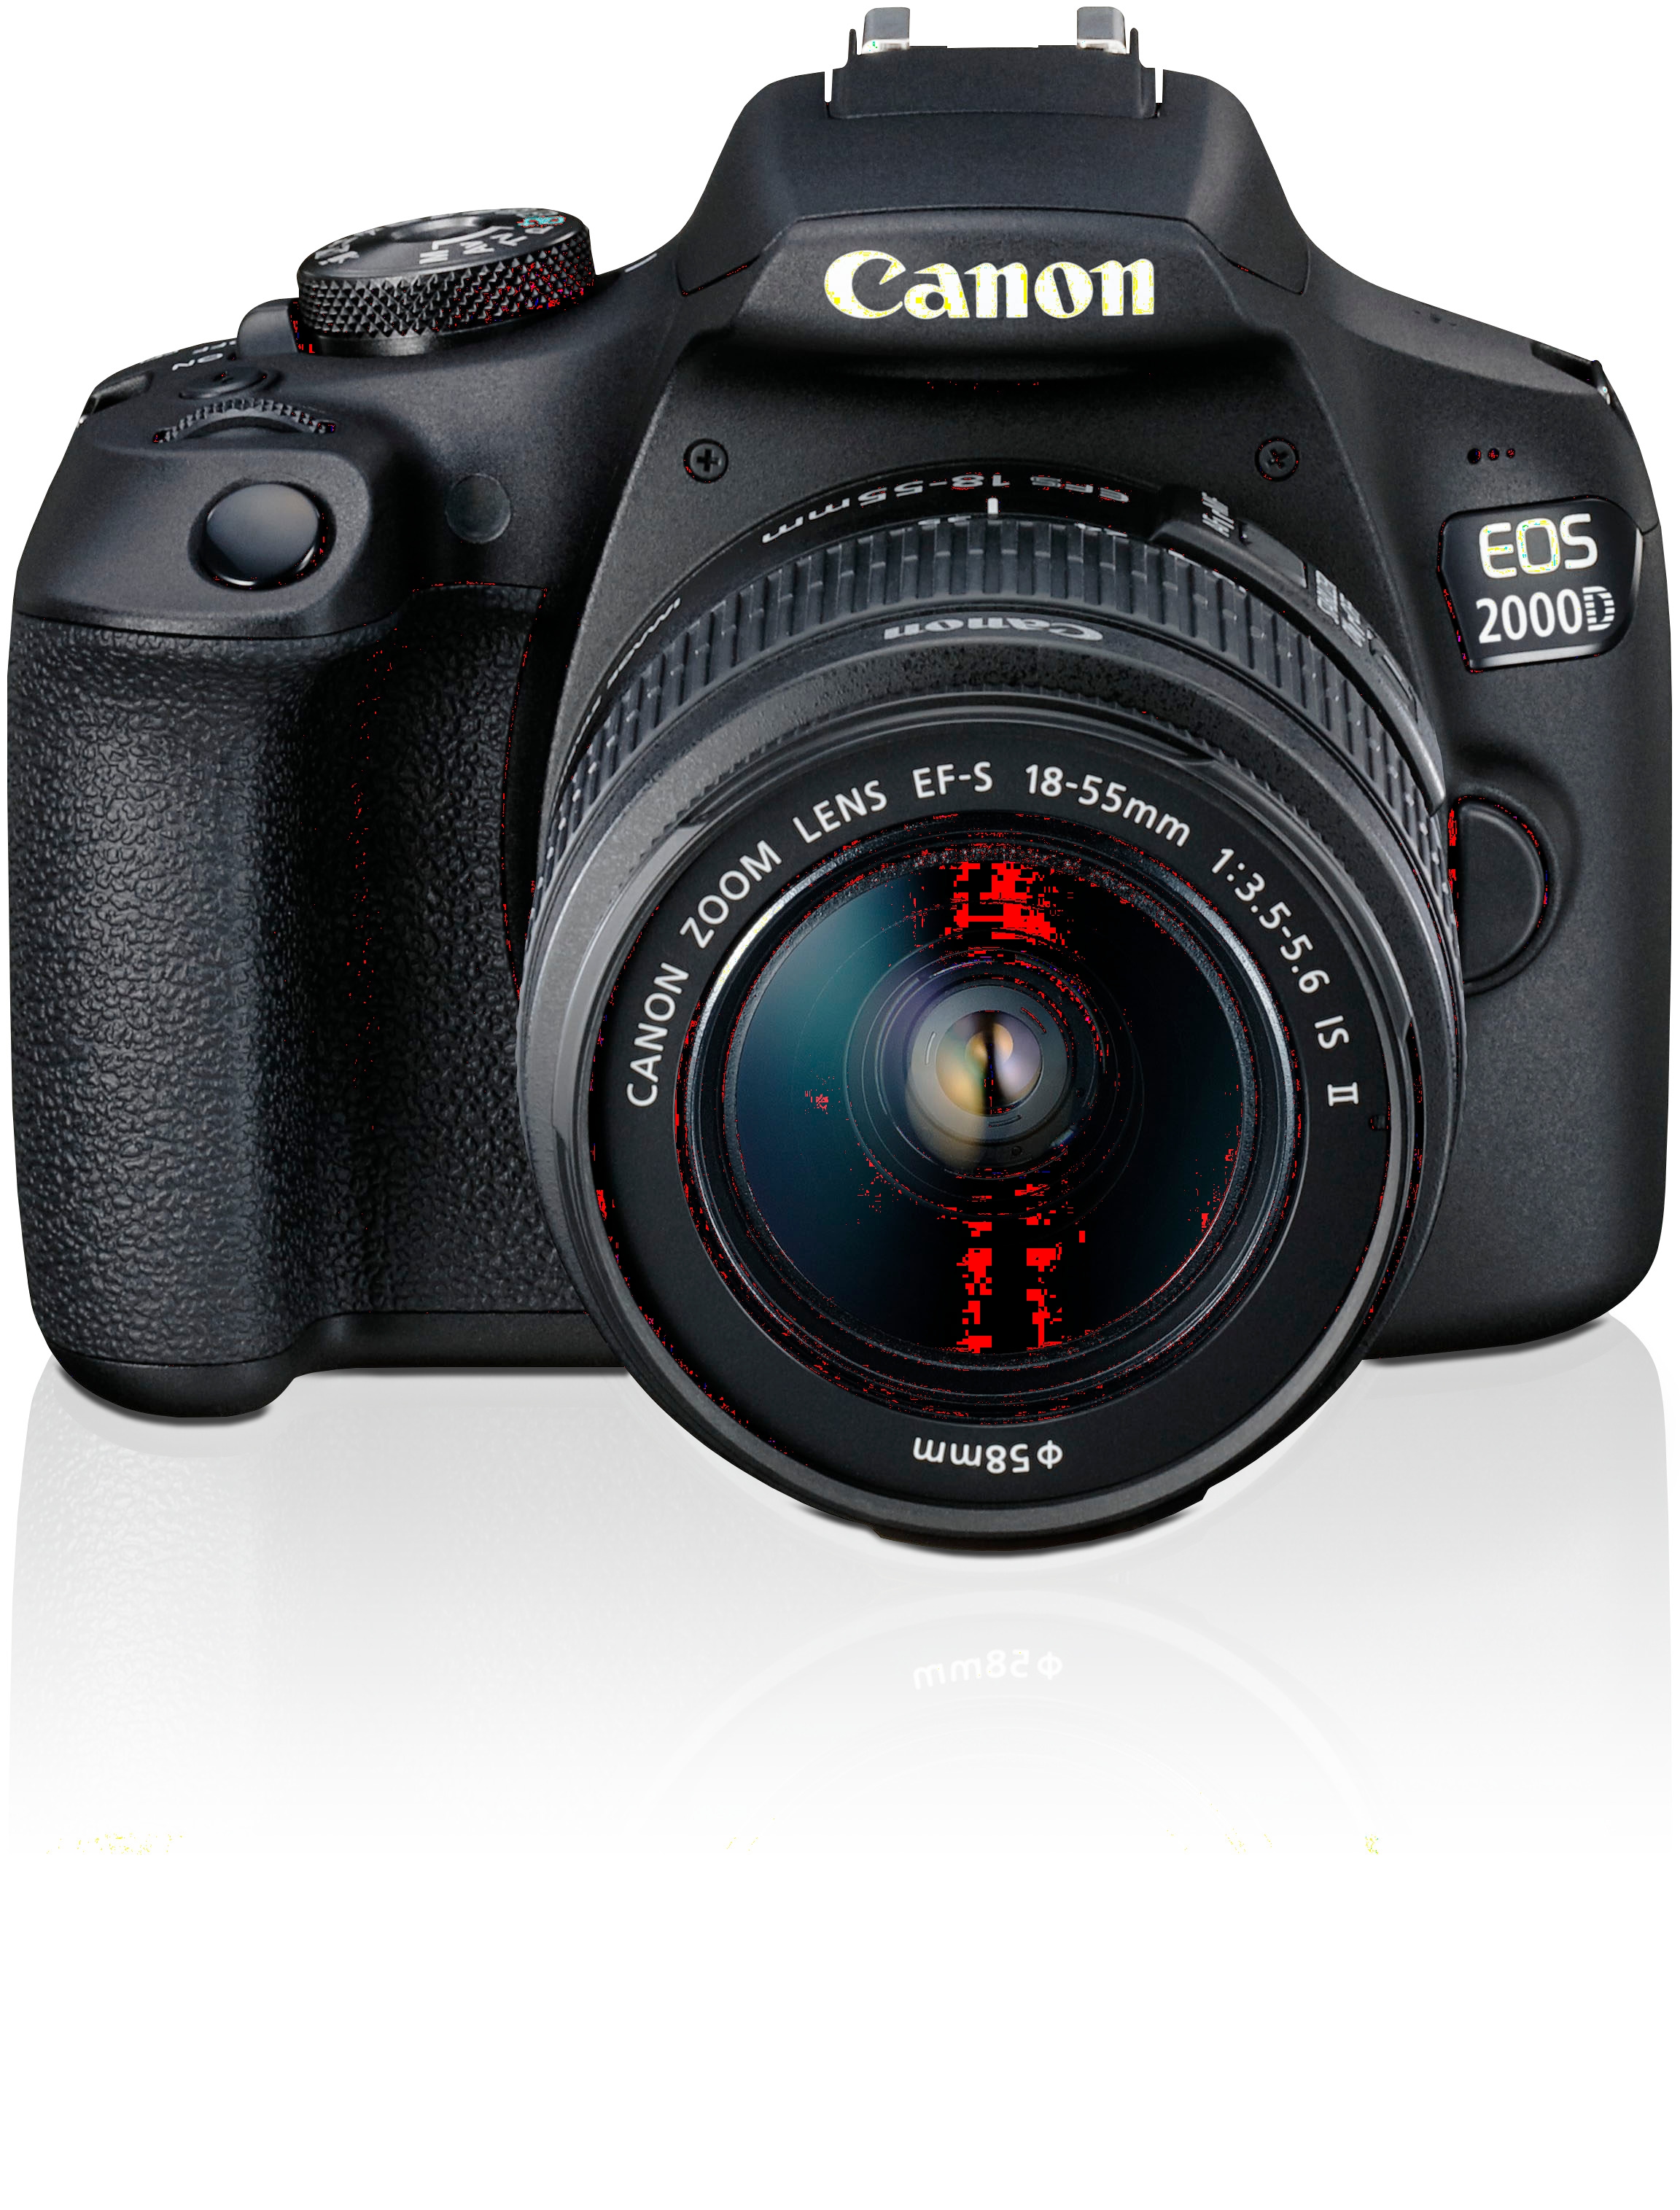 NFC- Canon 18-55 24,1 MP, II inkl. Objektiv 2000D 18-55 (Wi-Fi), Kit«, EF-S EF-S WLAN bei IS Spiegelreflexkamera IS »EOS II,